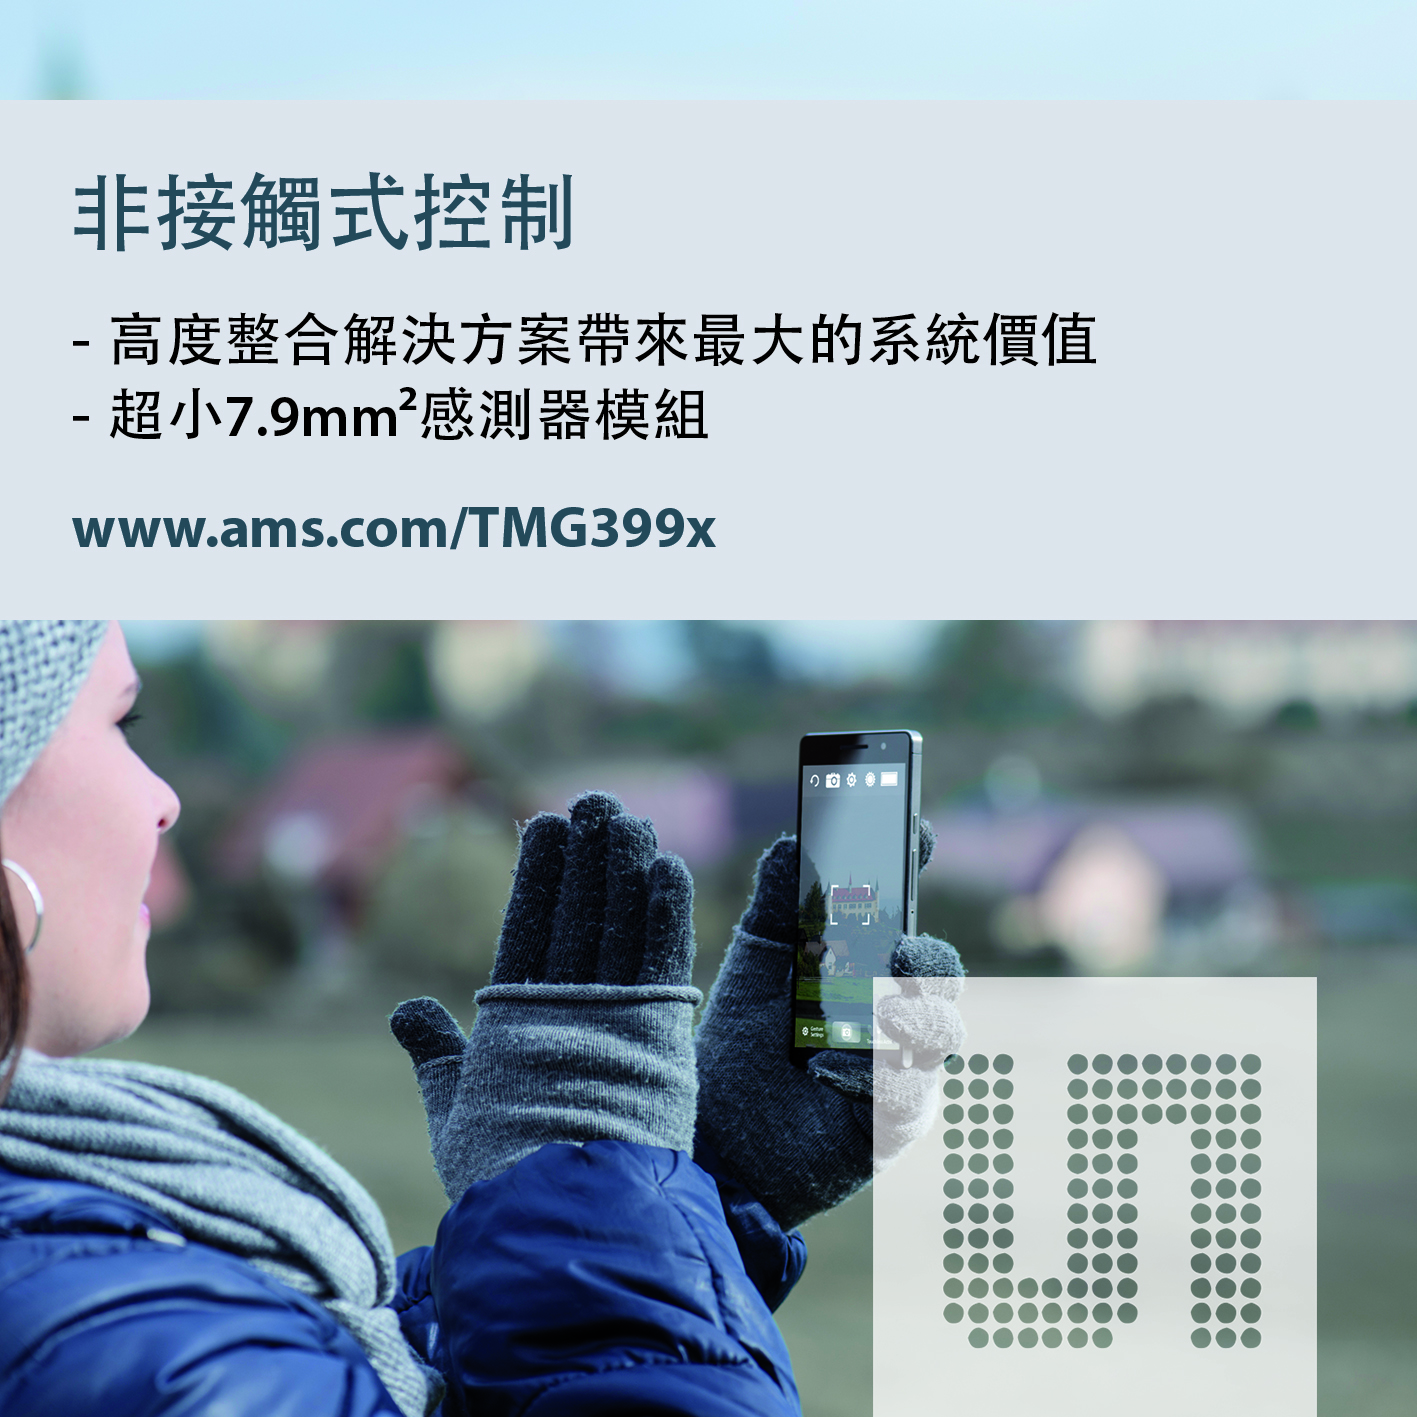 ams_PP_TMG399x_Taiwan_4c.jpg